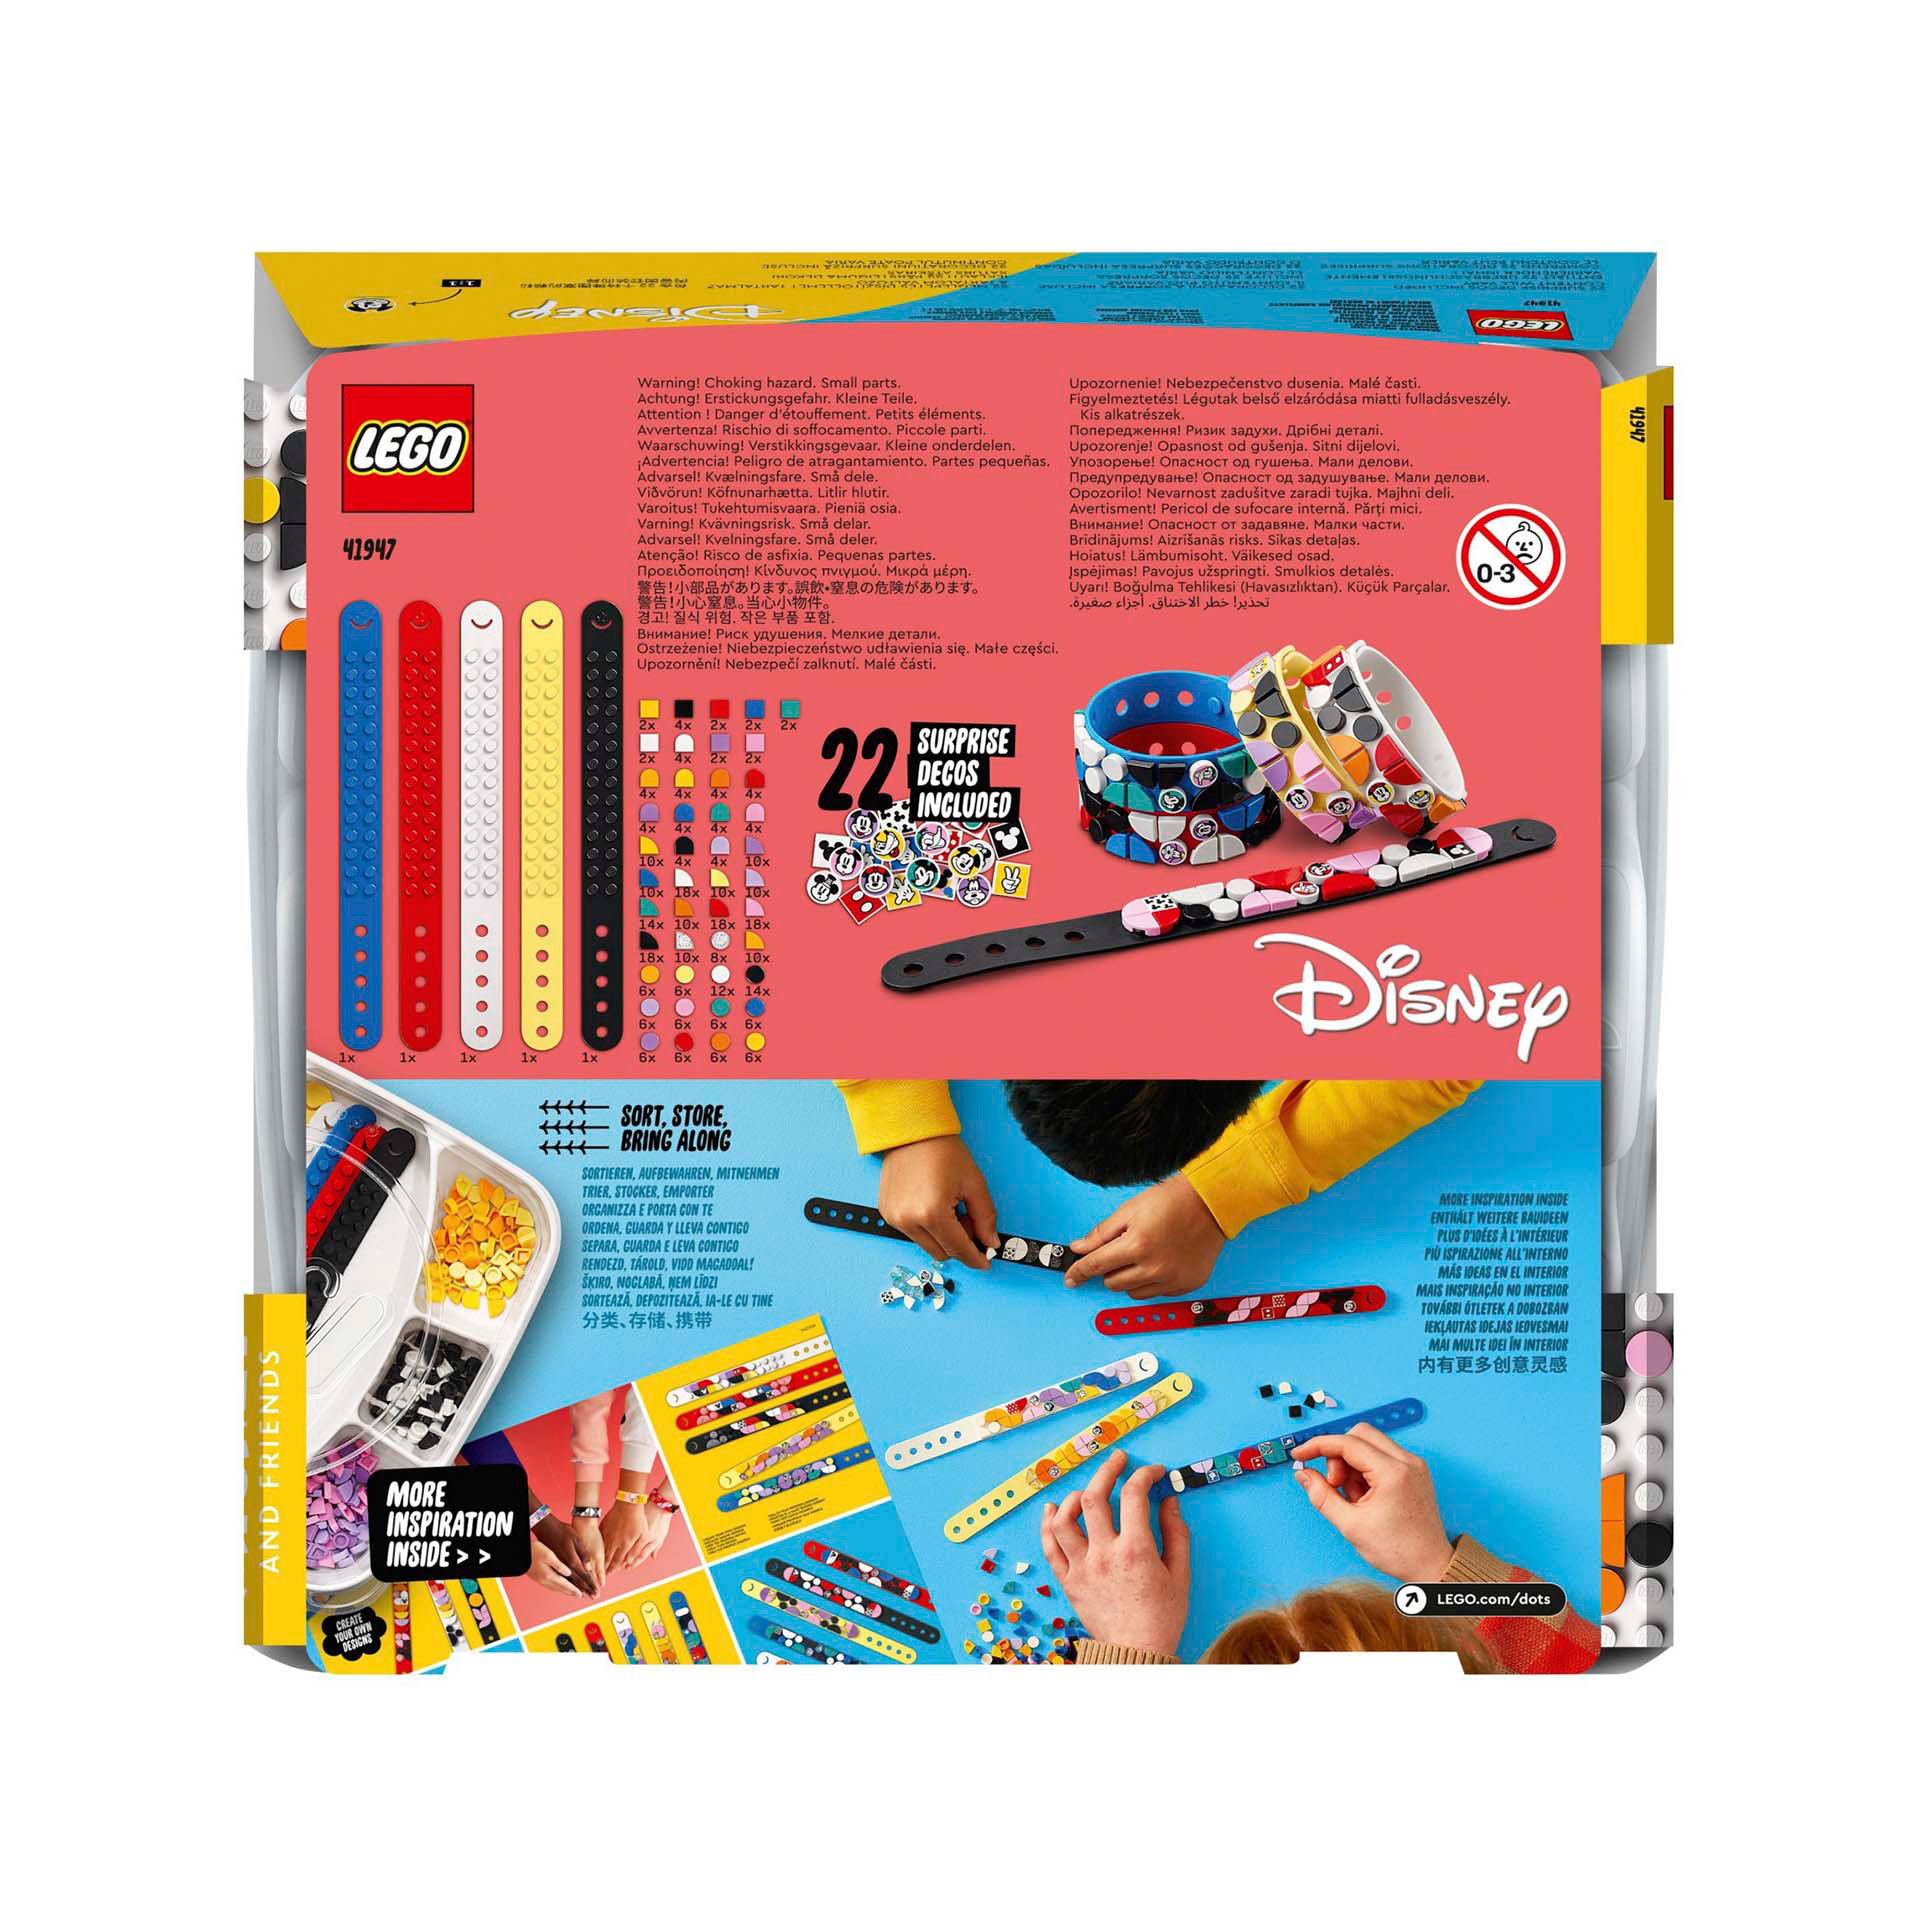 LEGO 41947 DOTS Disney Multipack Bracciali Topolino e Amici, Kit Fai da Te, Set 41947, , large